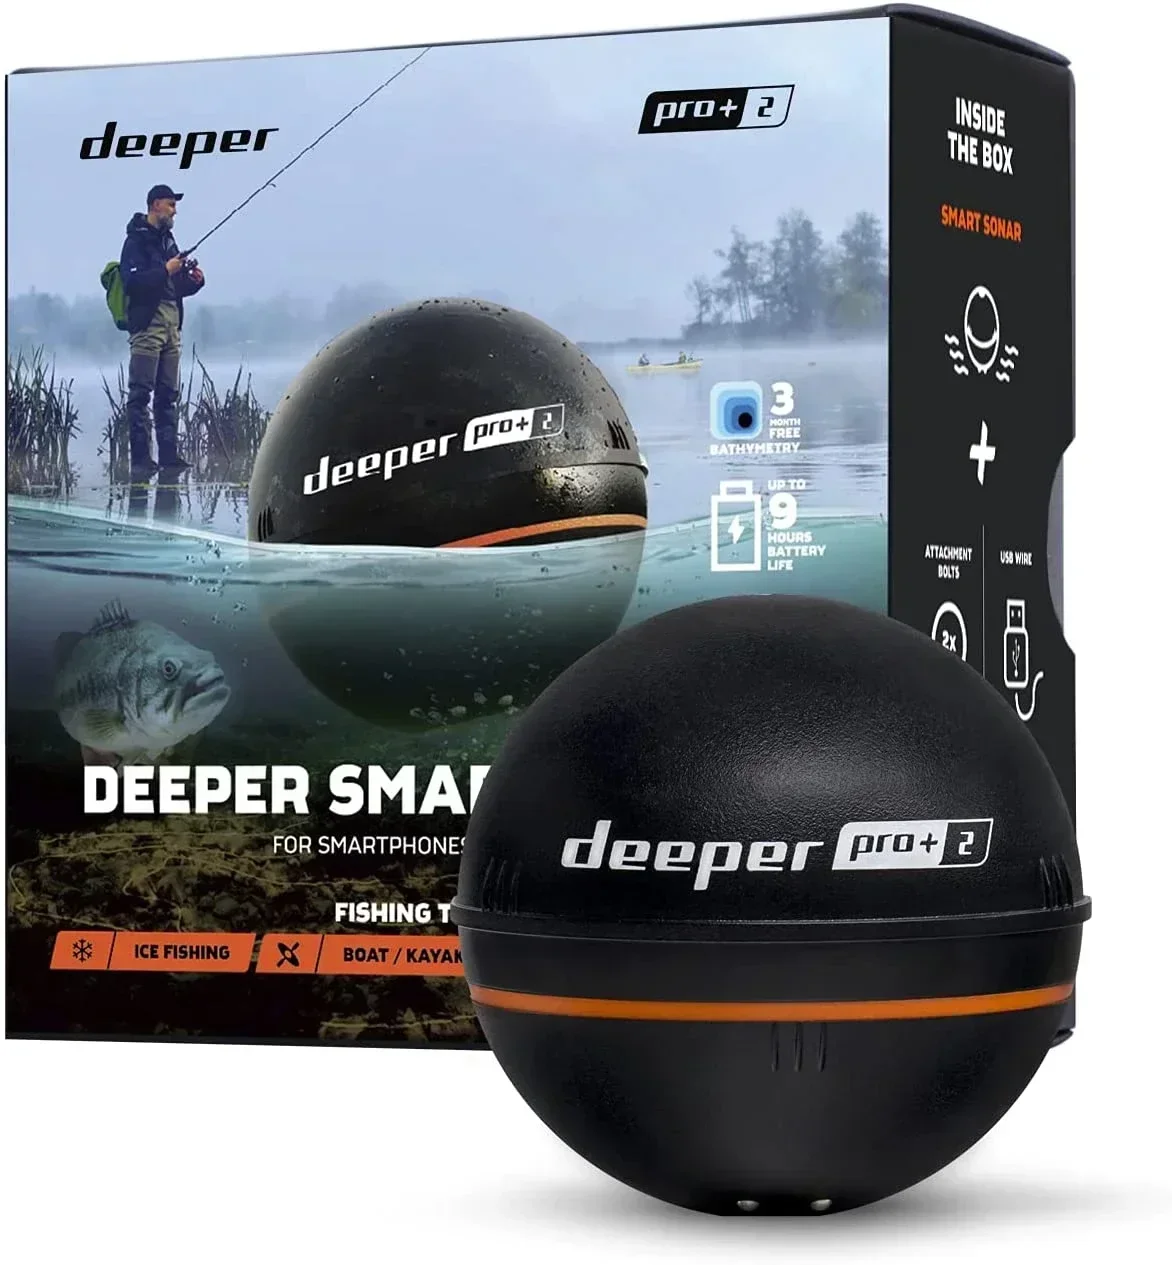 Оригинальный новый умный гидролокатор Deeper PRO + - портативный беспроводной Wi-Fi эхолот GPS